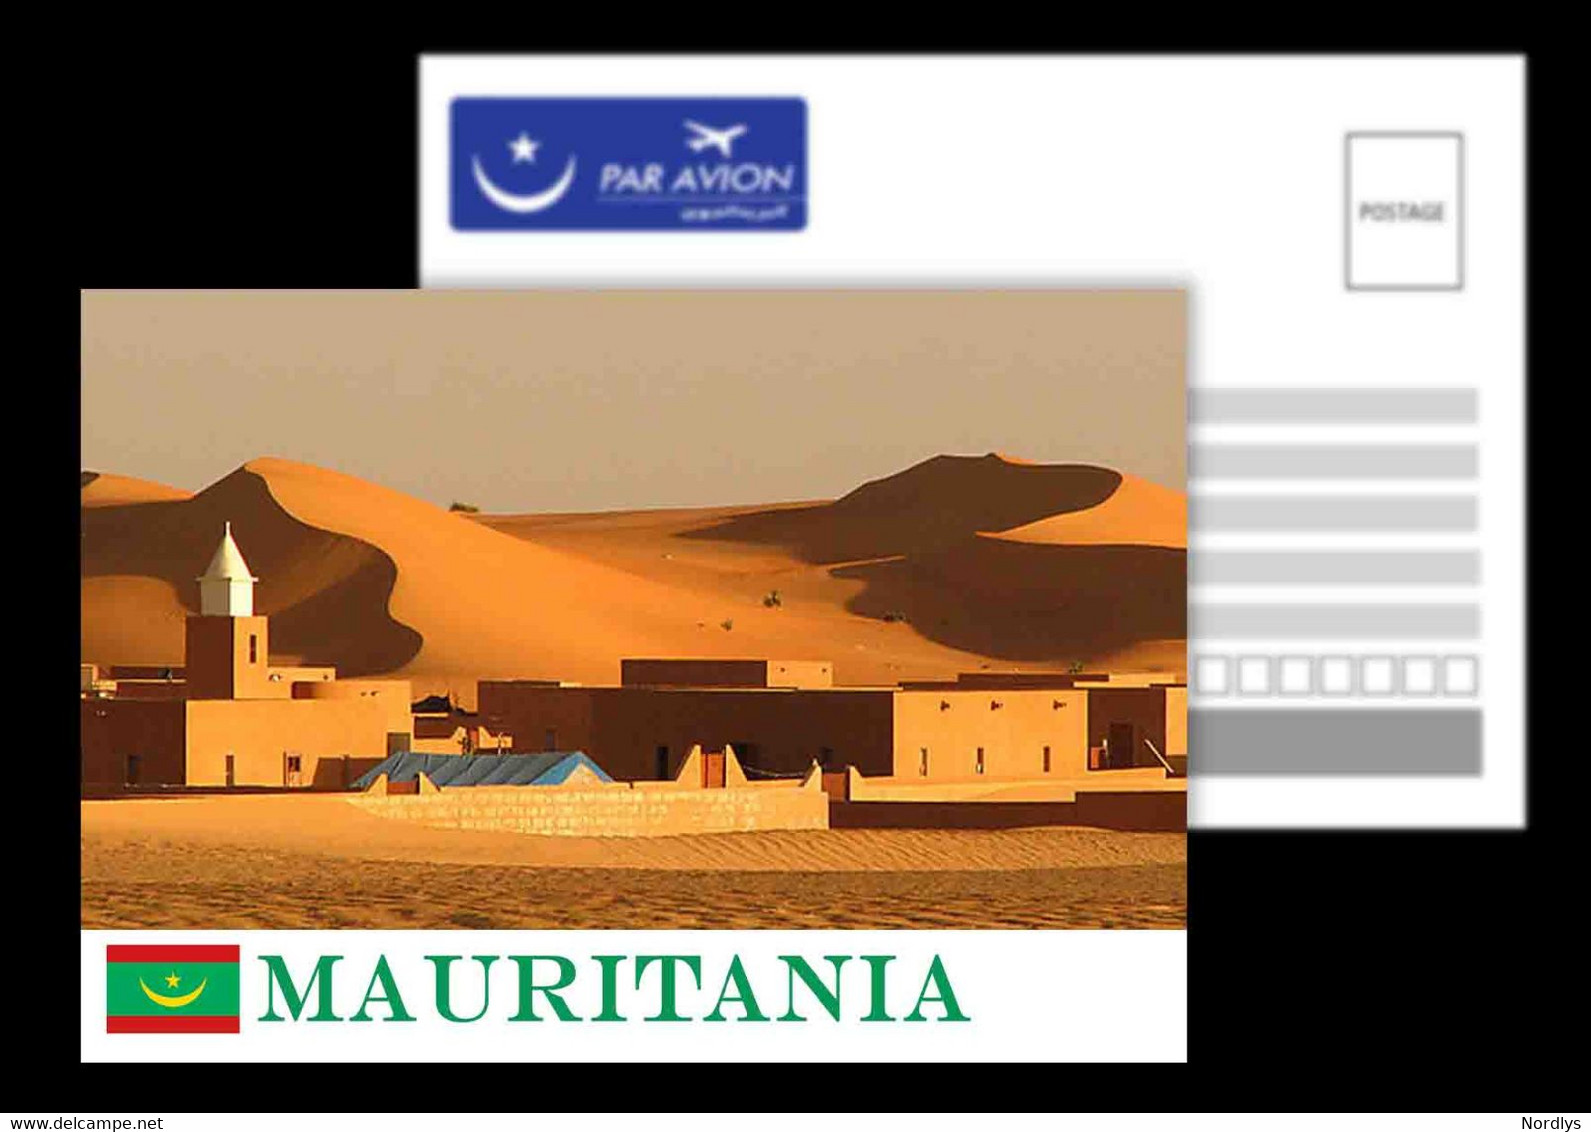 Mauritania / Postcard /View Card - Mauritanie